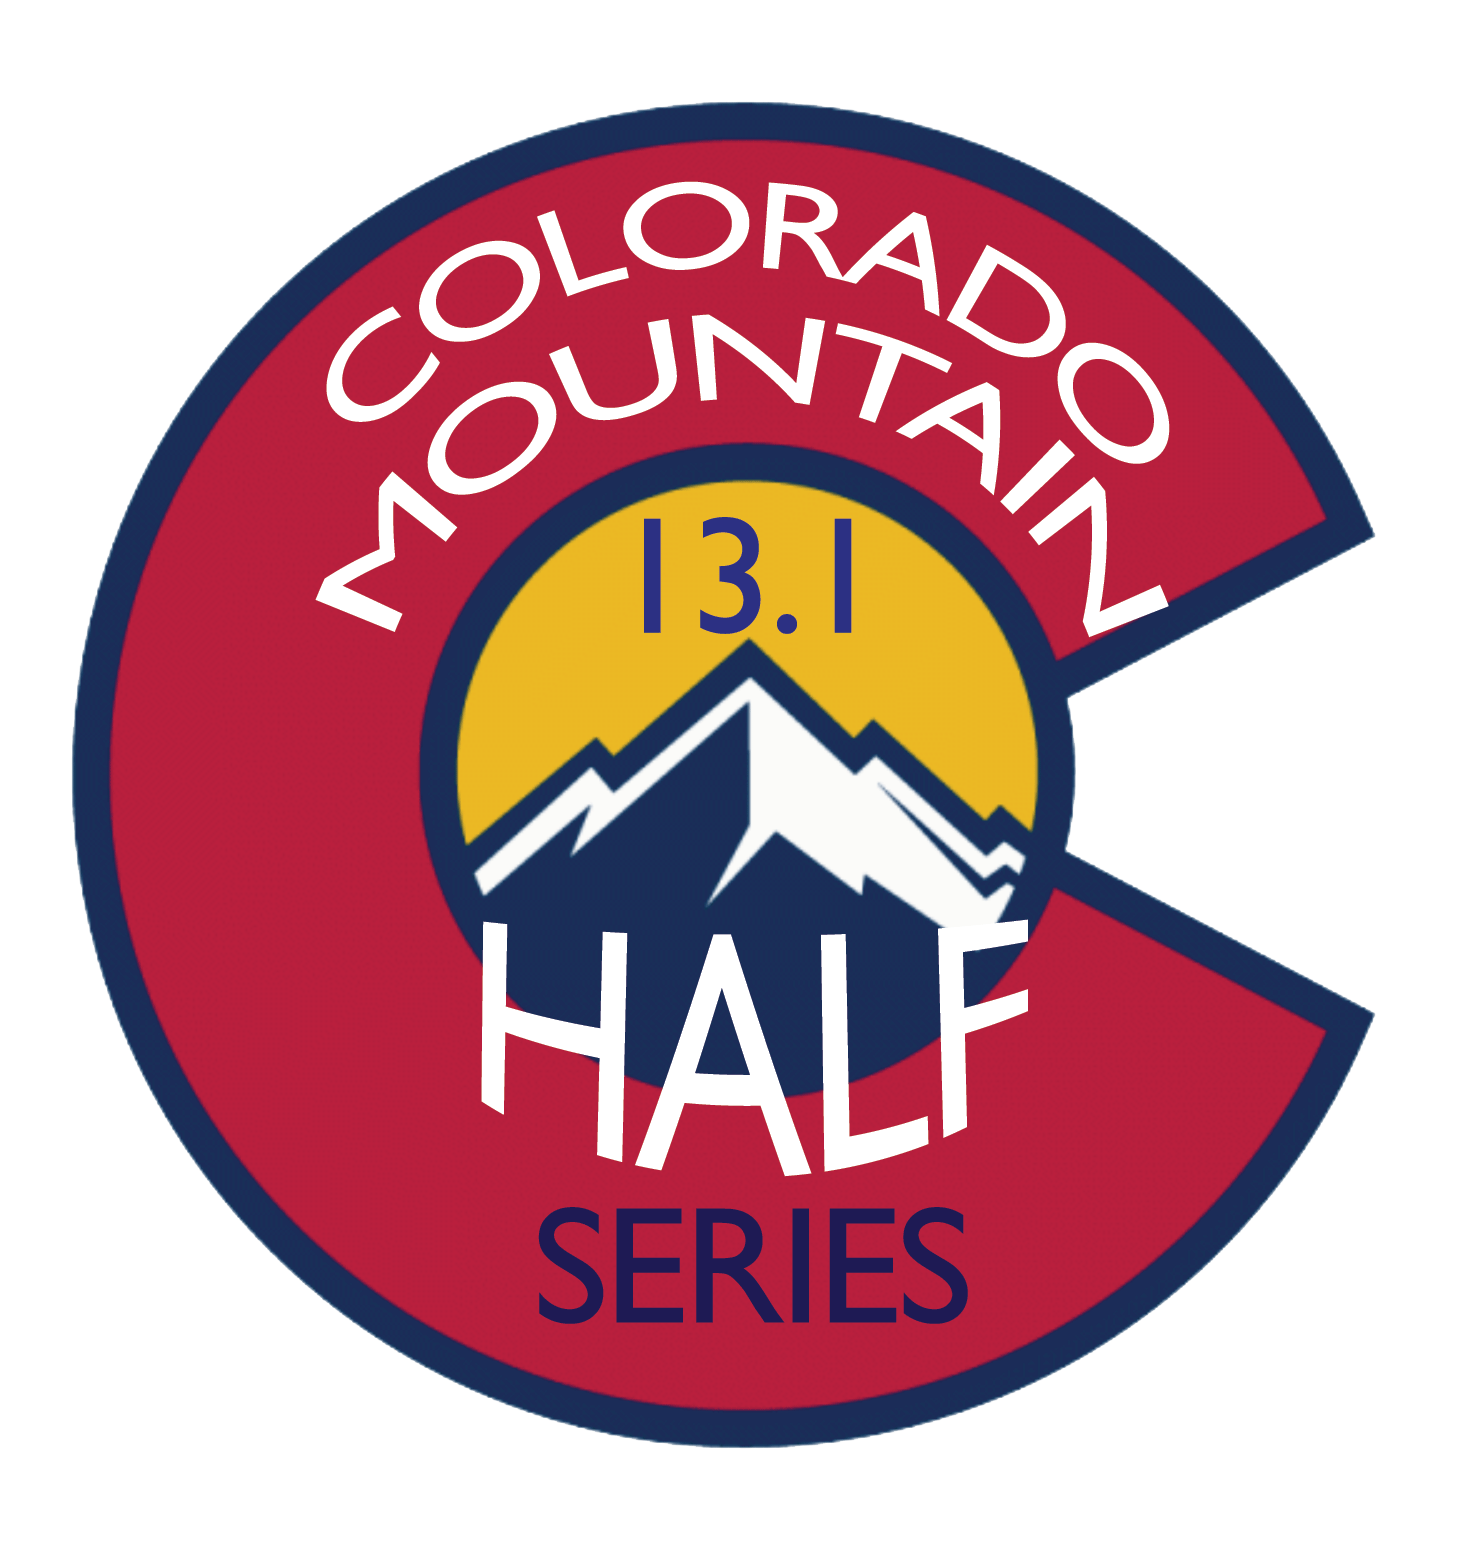 Half Mountain Logo - Colorado Mountain Half Marathon Series